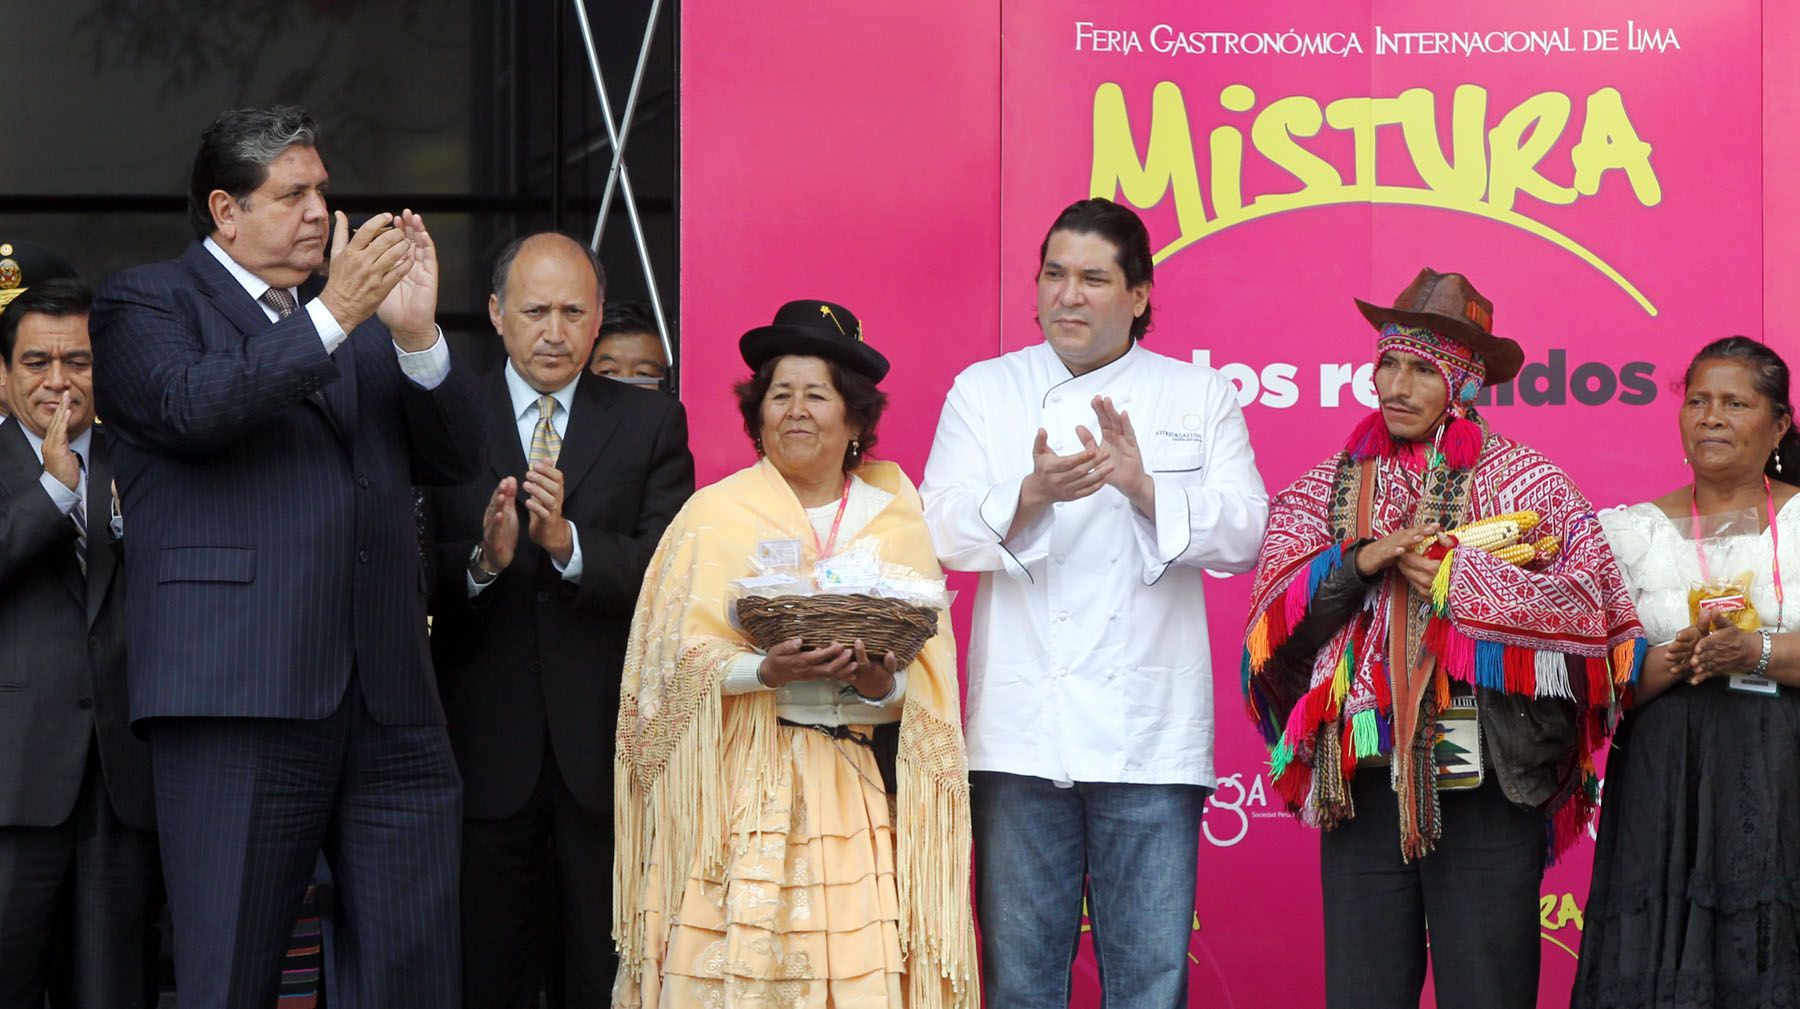 Presidente de la República, Alan García, inaugura junto a directivos de Asociación Peruana de Gastronomía, la III Feria Gastronómica Internacional de Lima Mistura.
Foto: ANDINA/Carlos Lezama